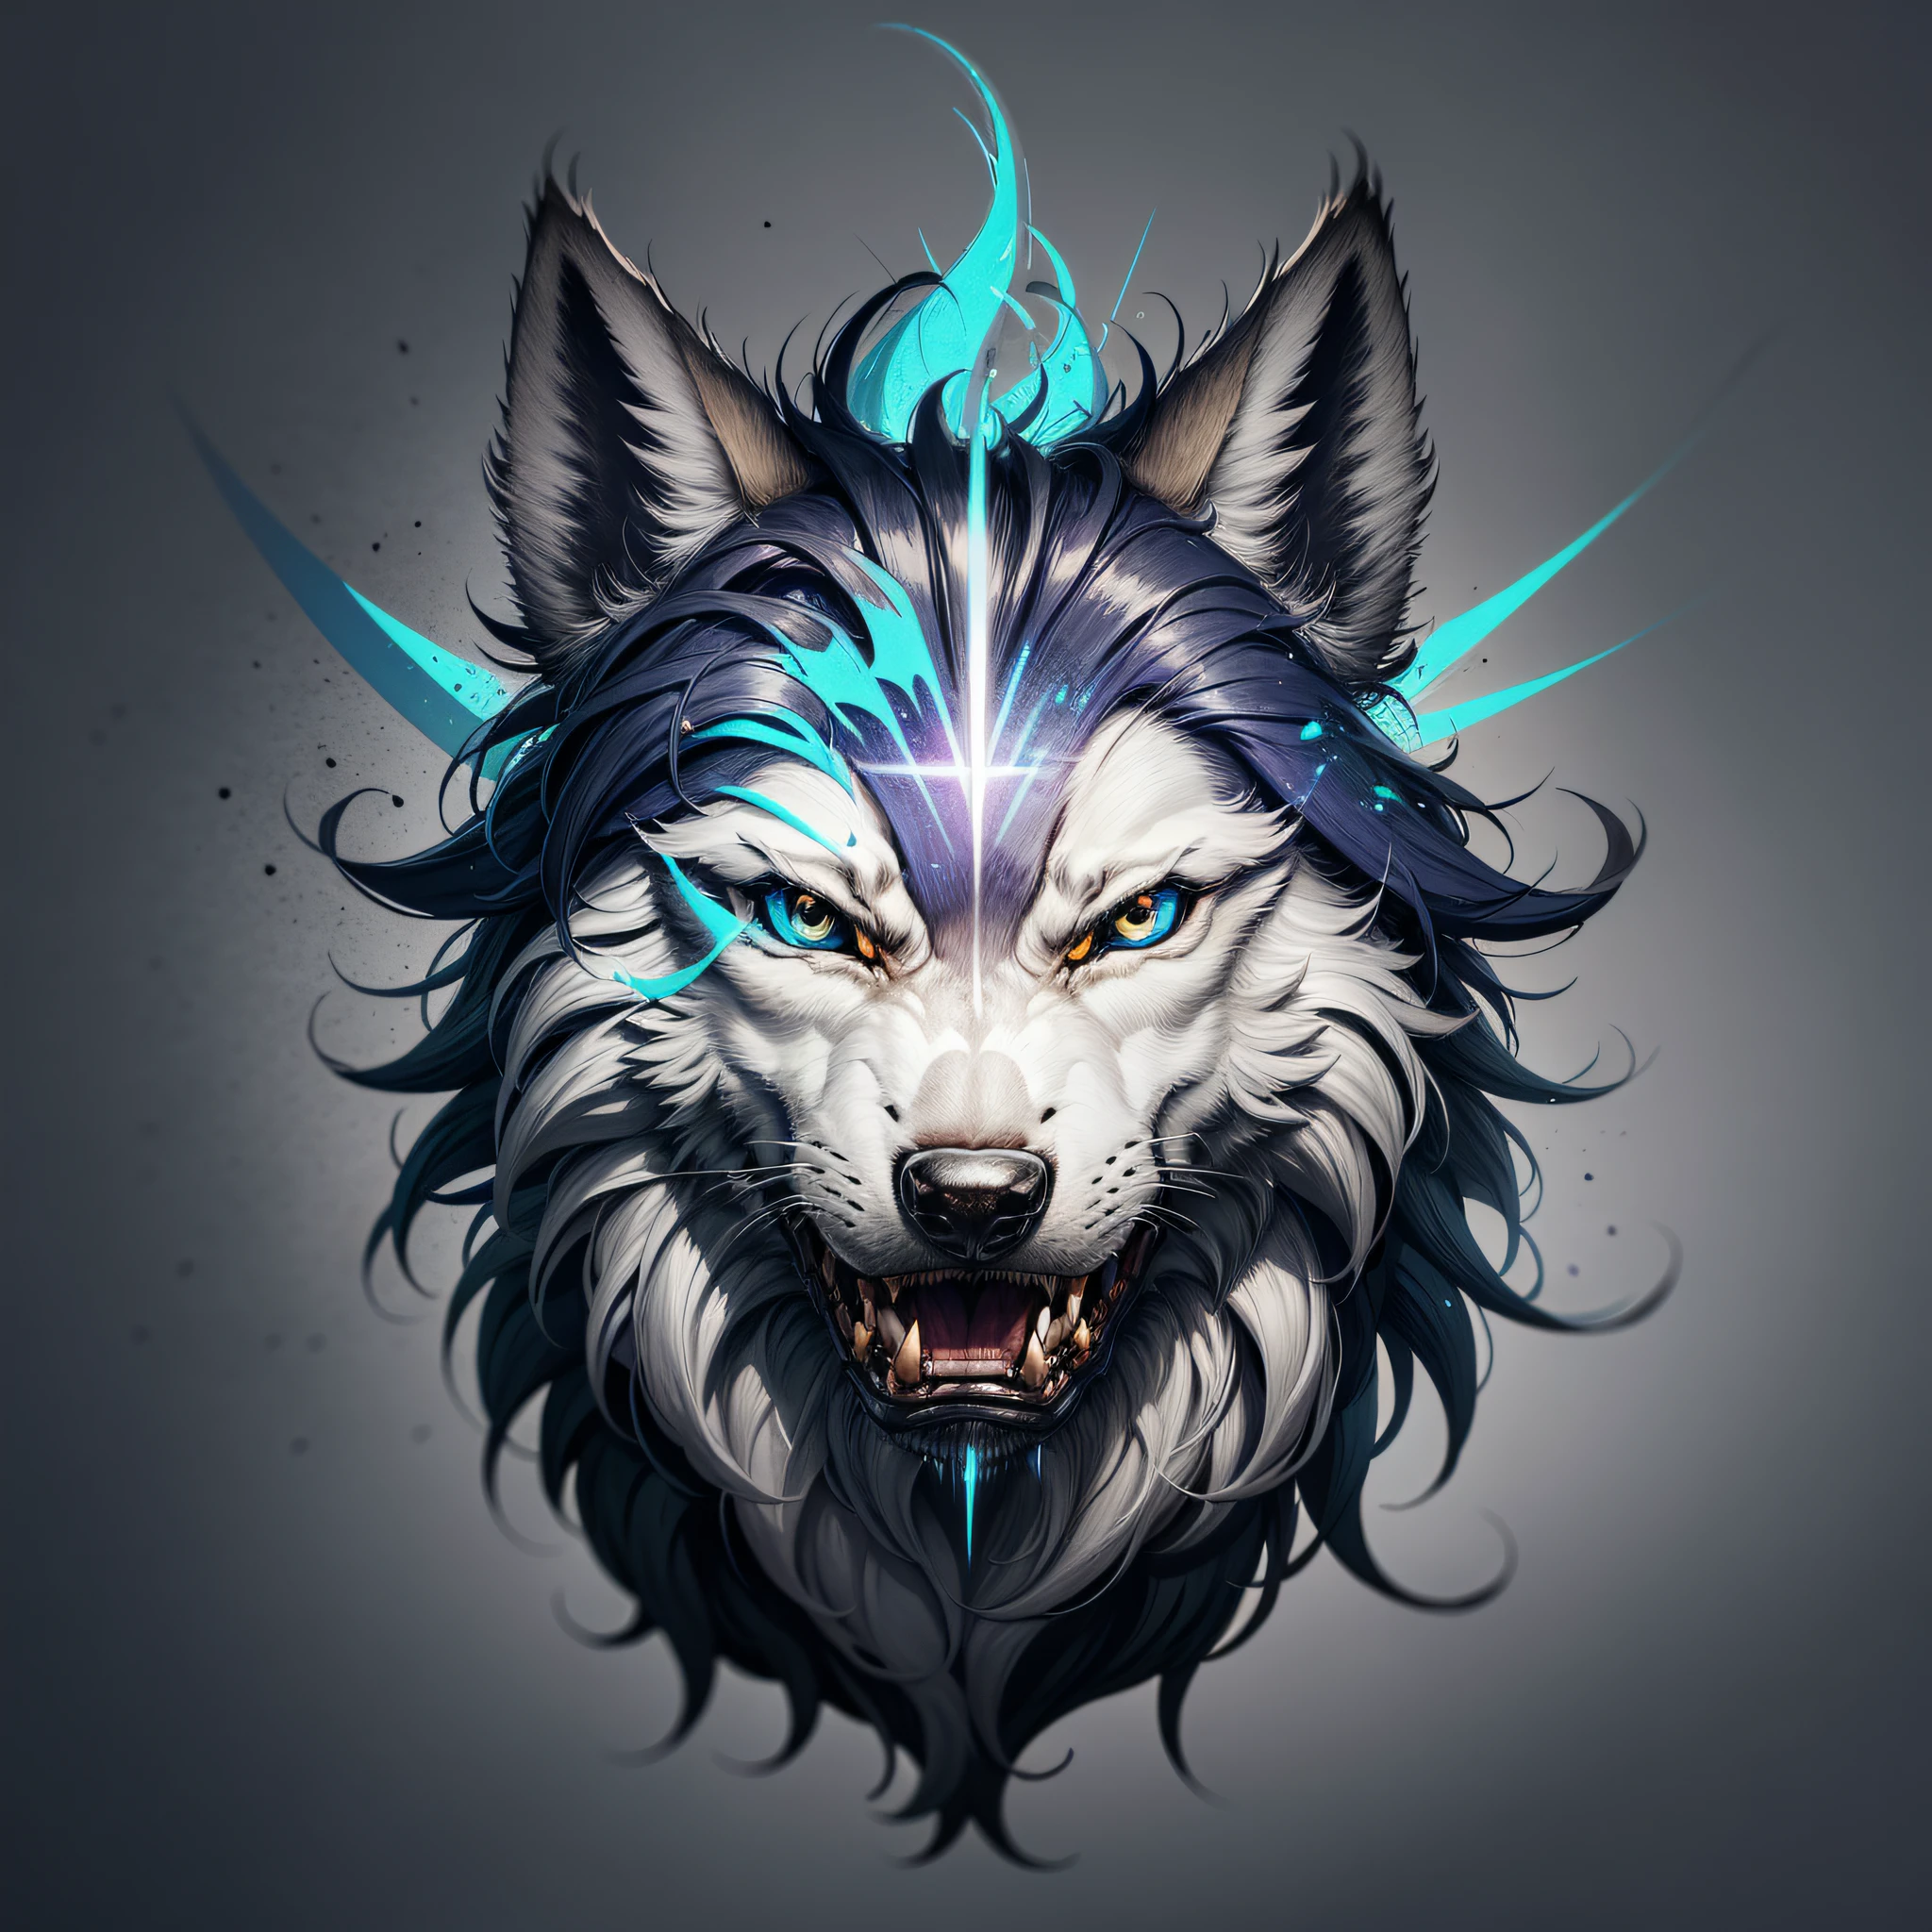 オオカミの文字が入ったロゴ, ウルフラインアートロゴ, 白色の背景, 明るい青, 最小限かつ純粋 — Wolf --auto --s2